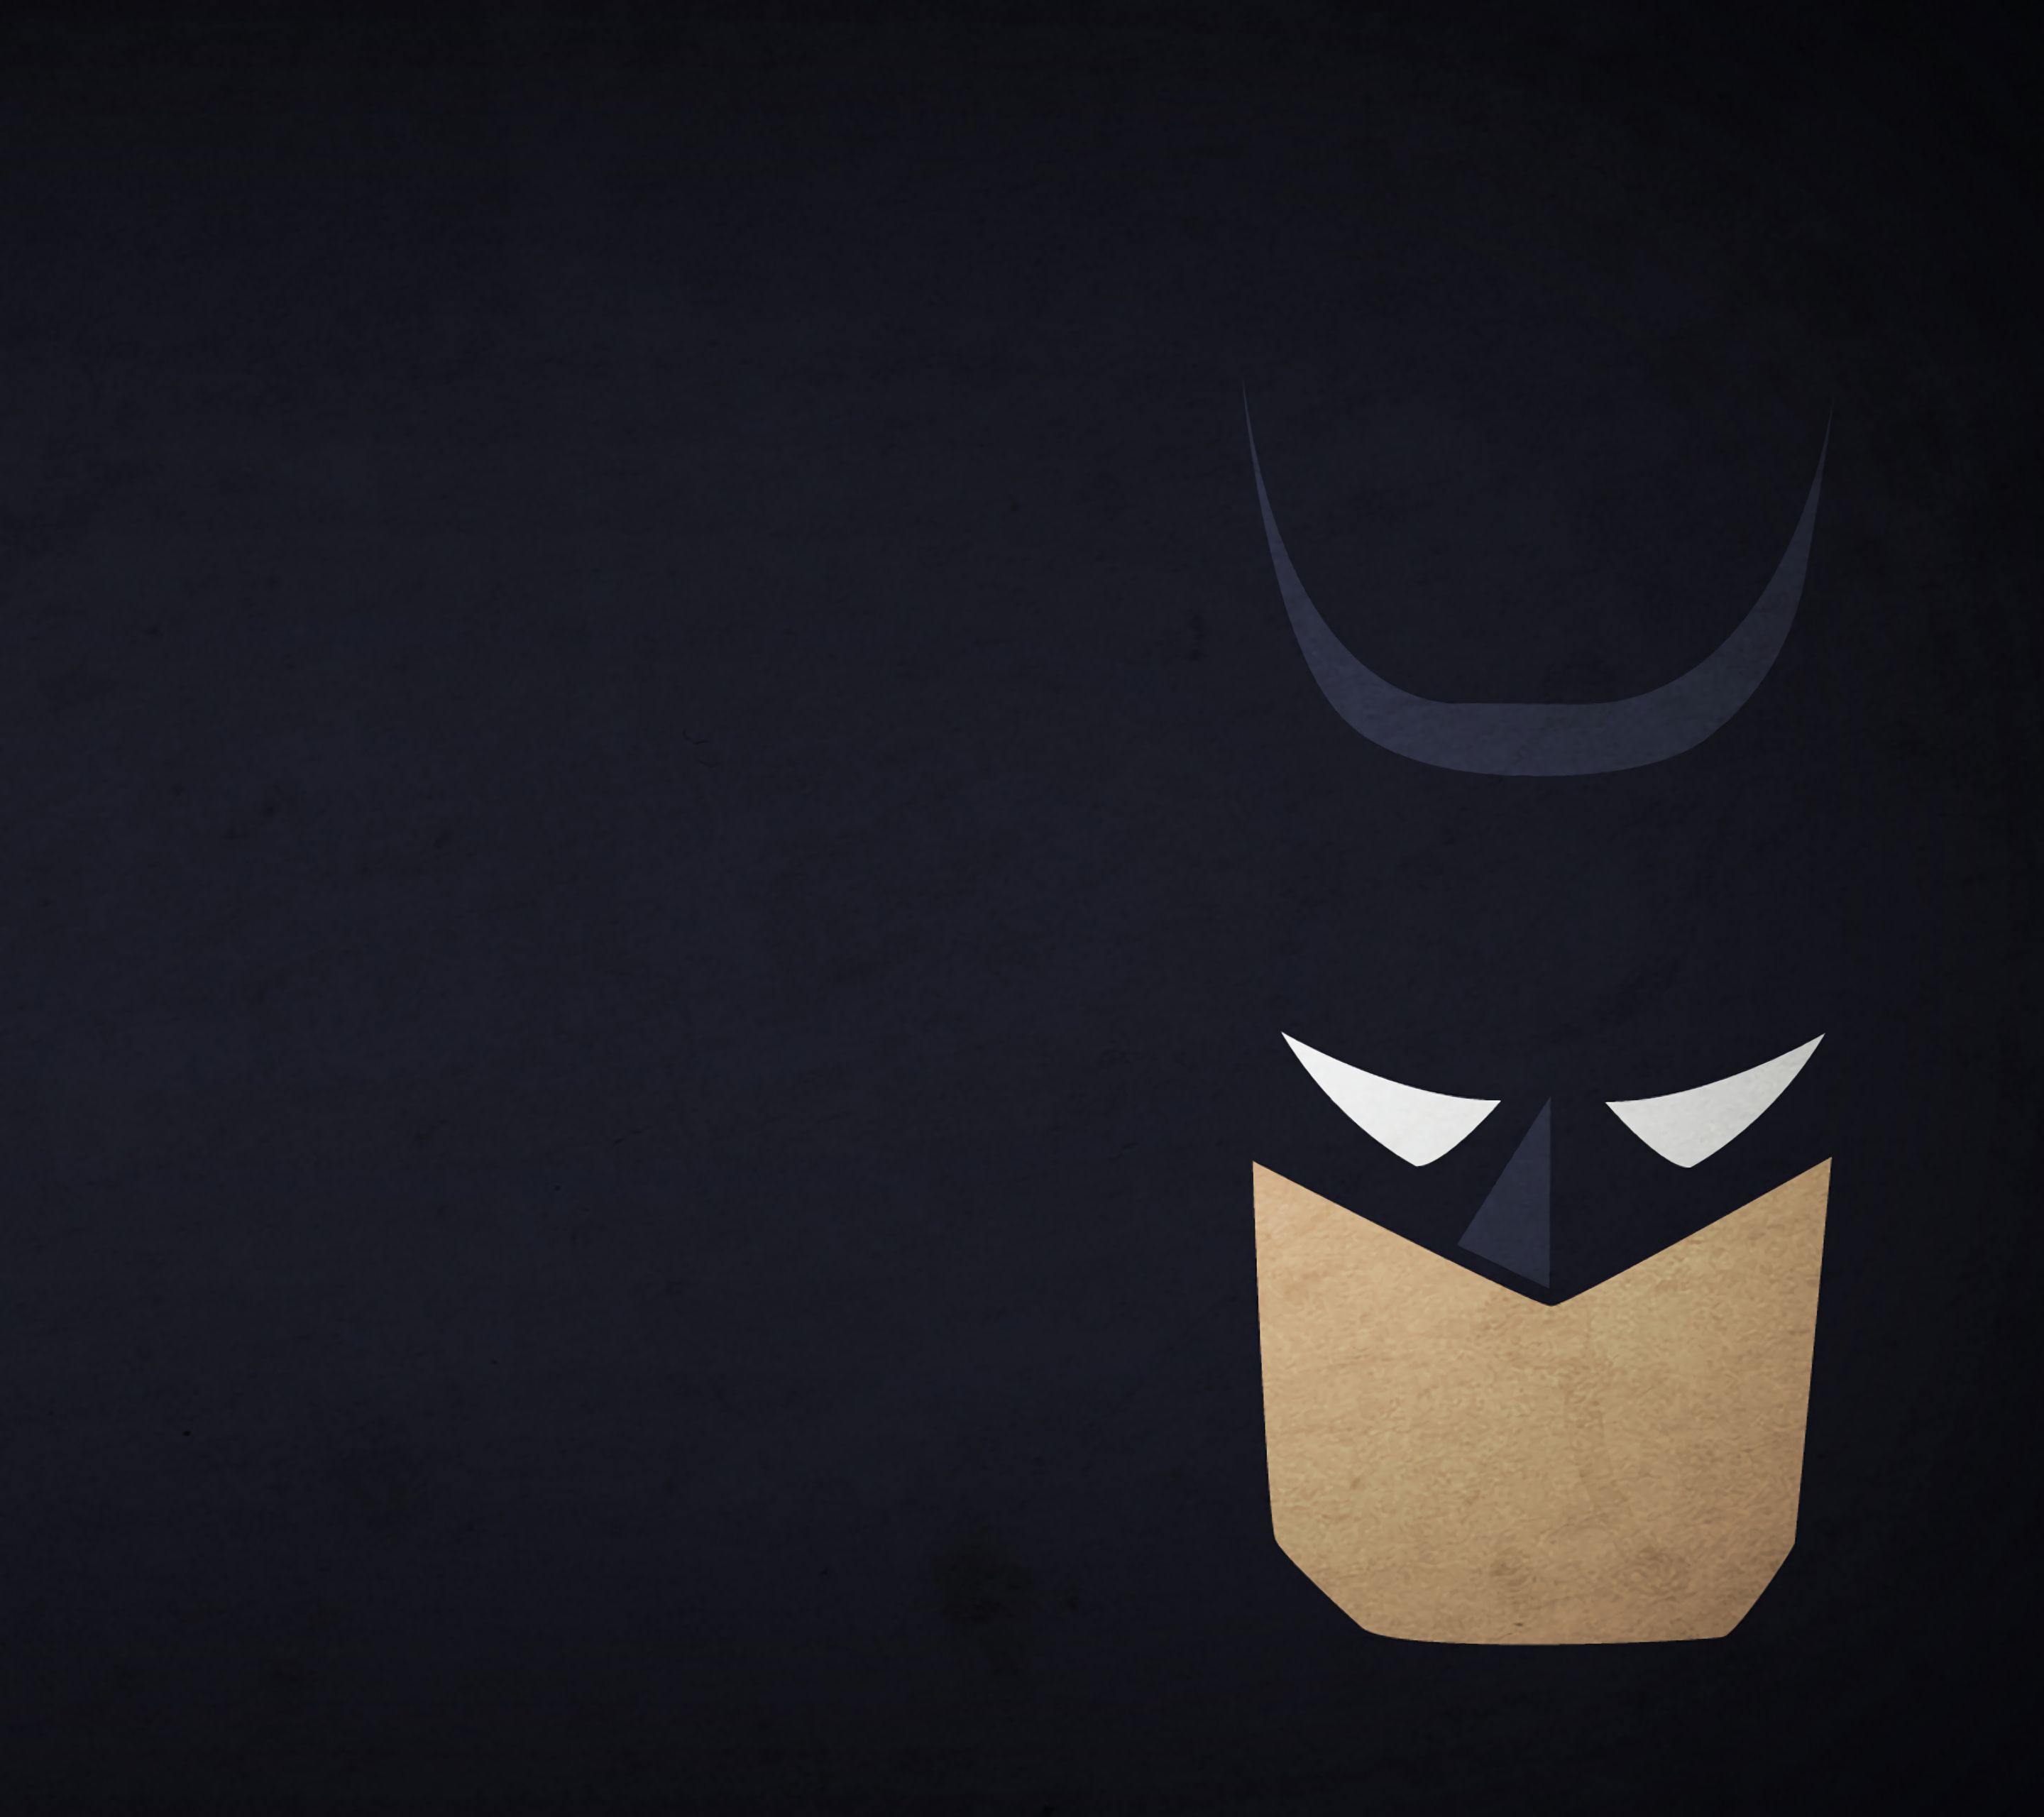 Batman Wallpaper For Macbook Air